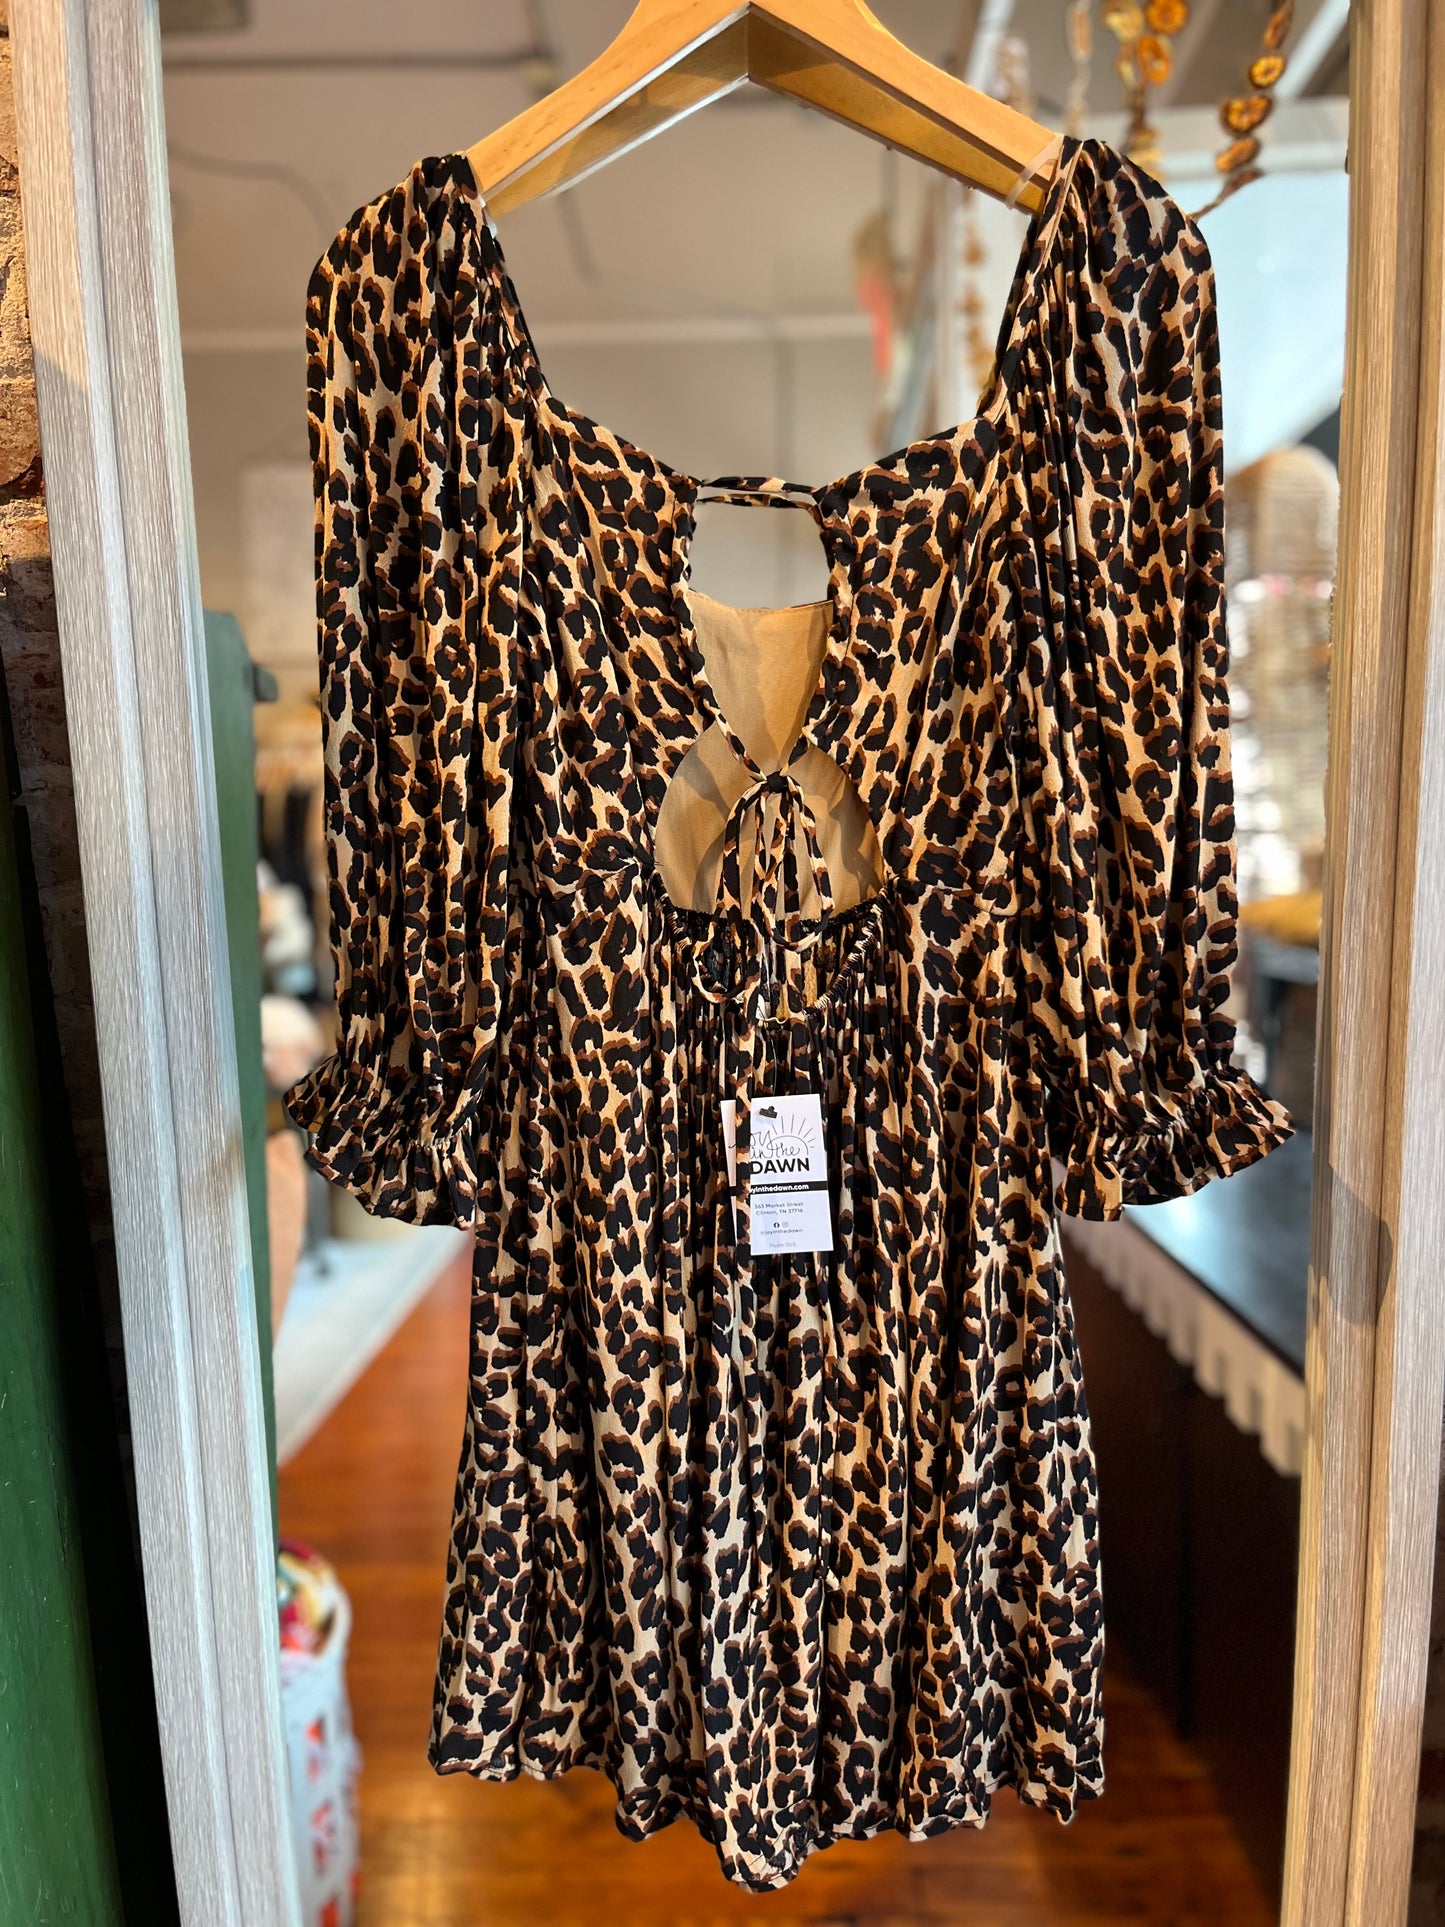 Cheetah Print Mini Dress